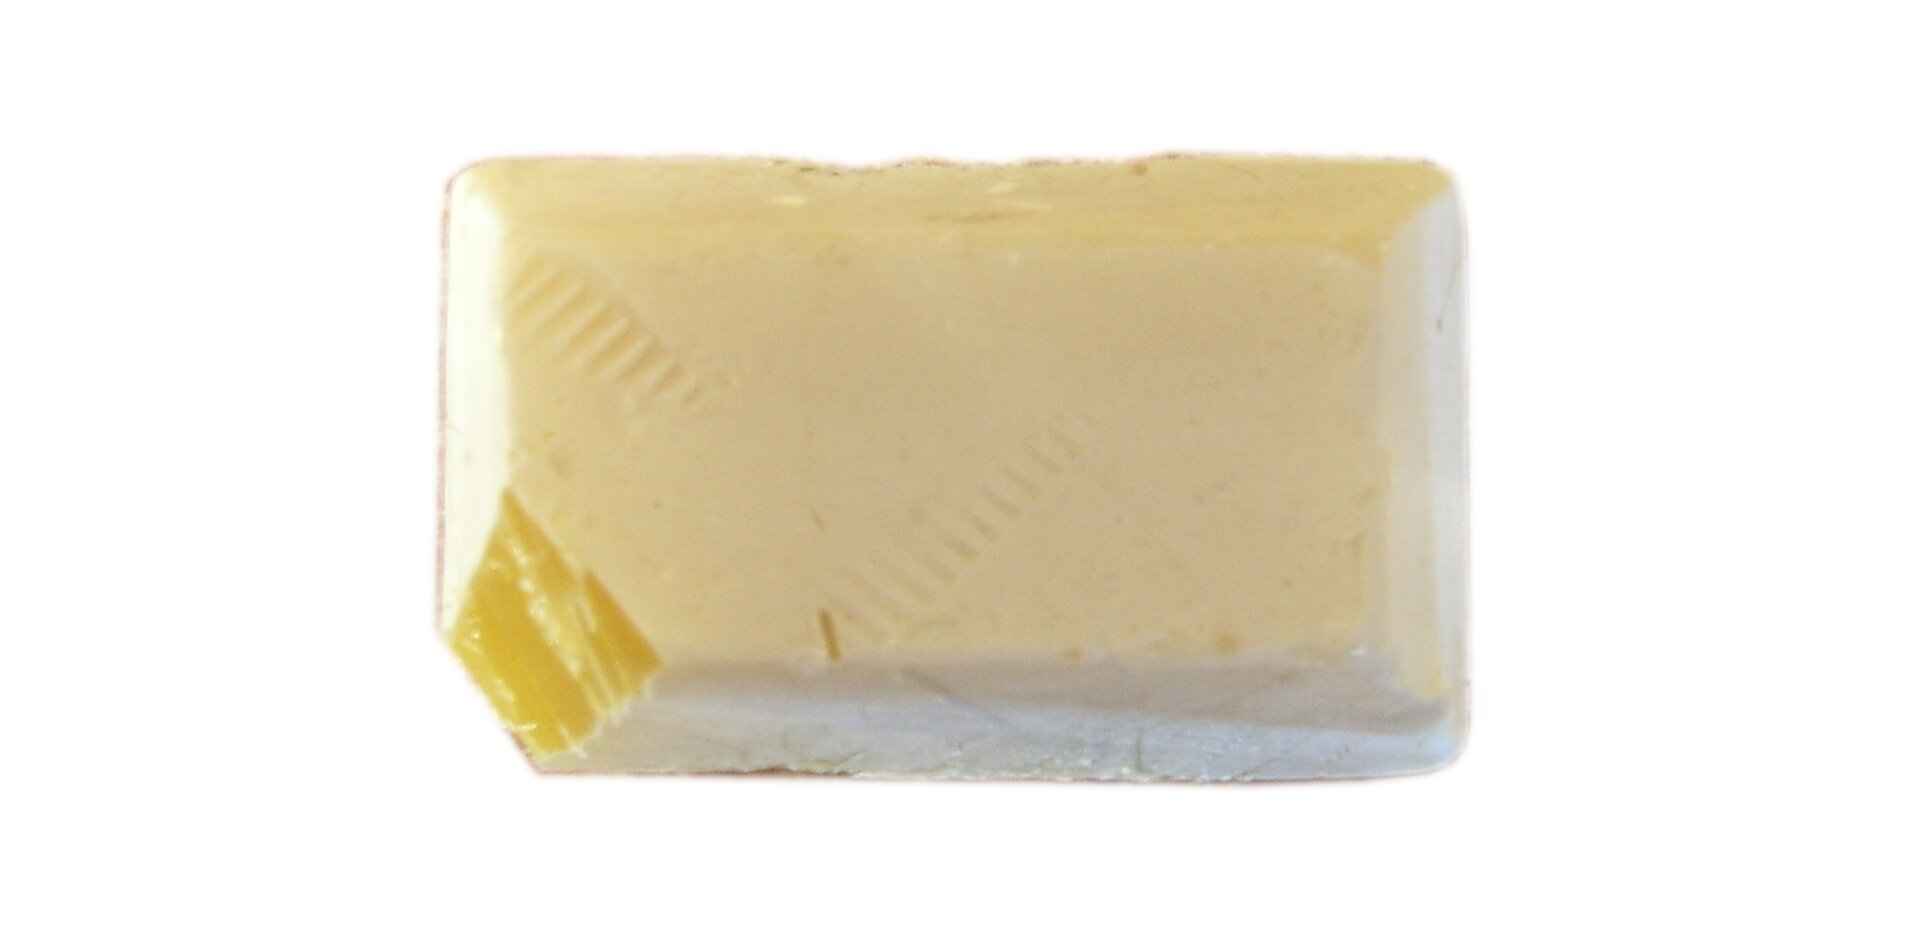 Zdjęcie przedstawia fosfor biały w postaci kremowej kostki z obciętym narożnikiem, przez który widać intensywnie żółte zabarwienie wnętrza kawałka.